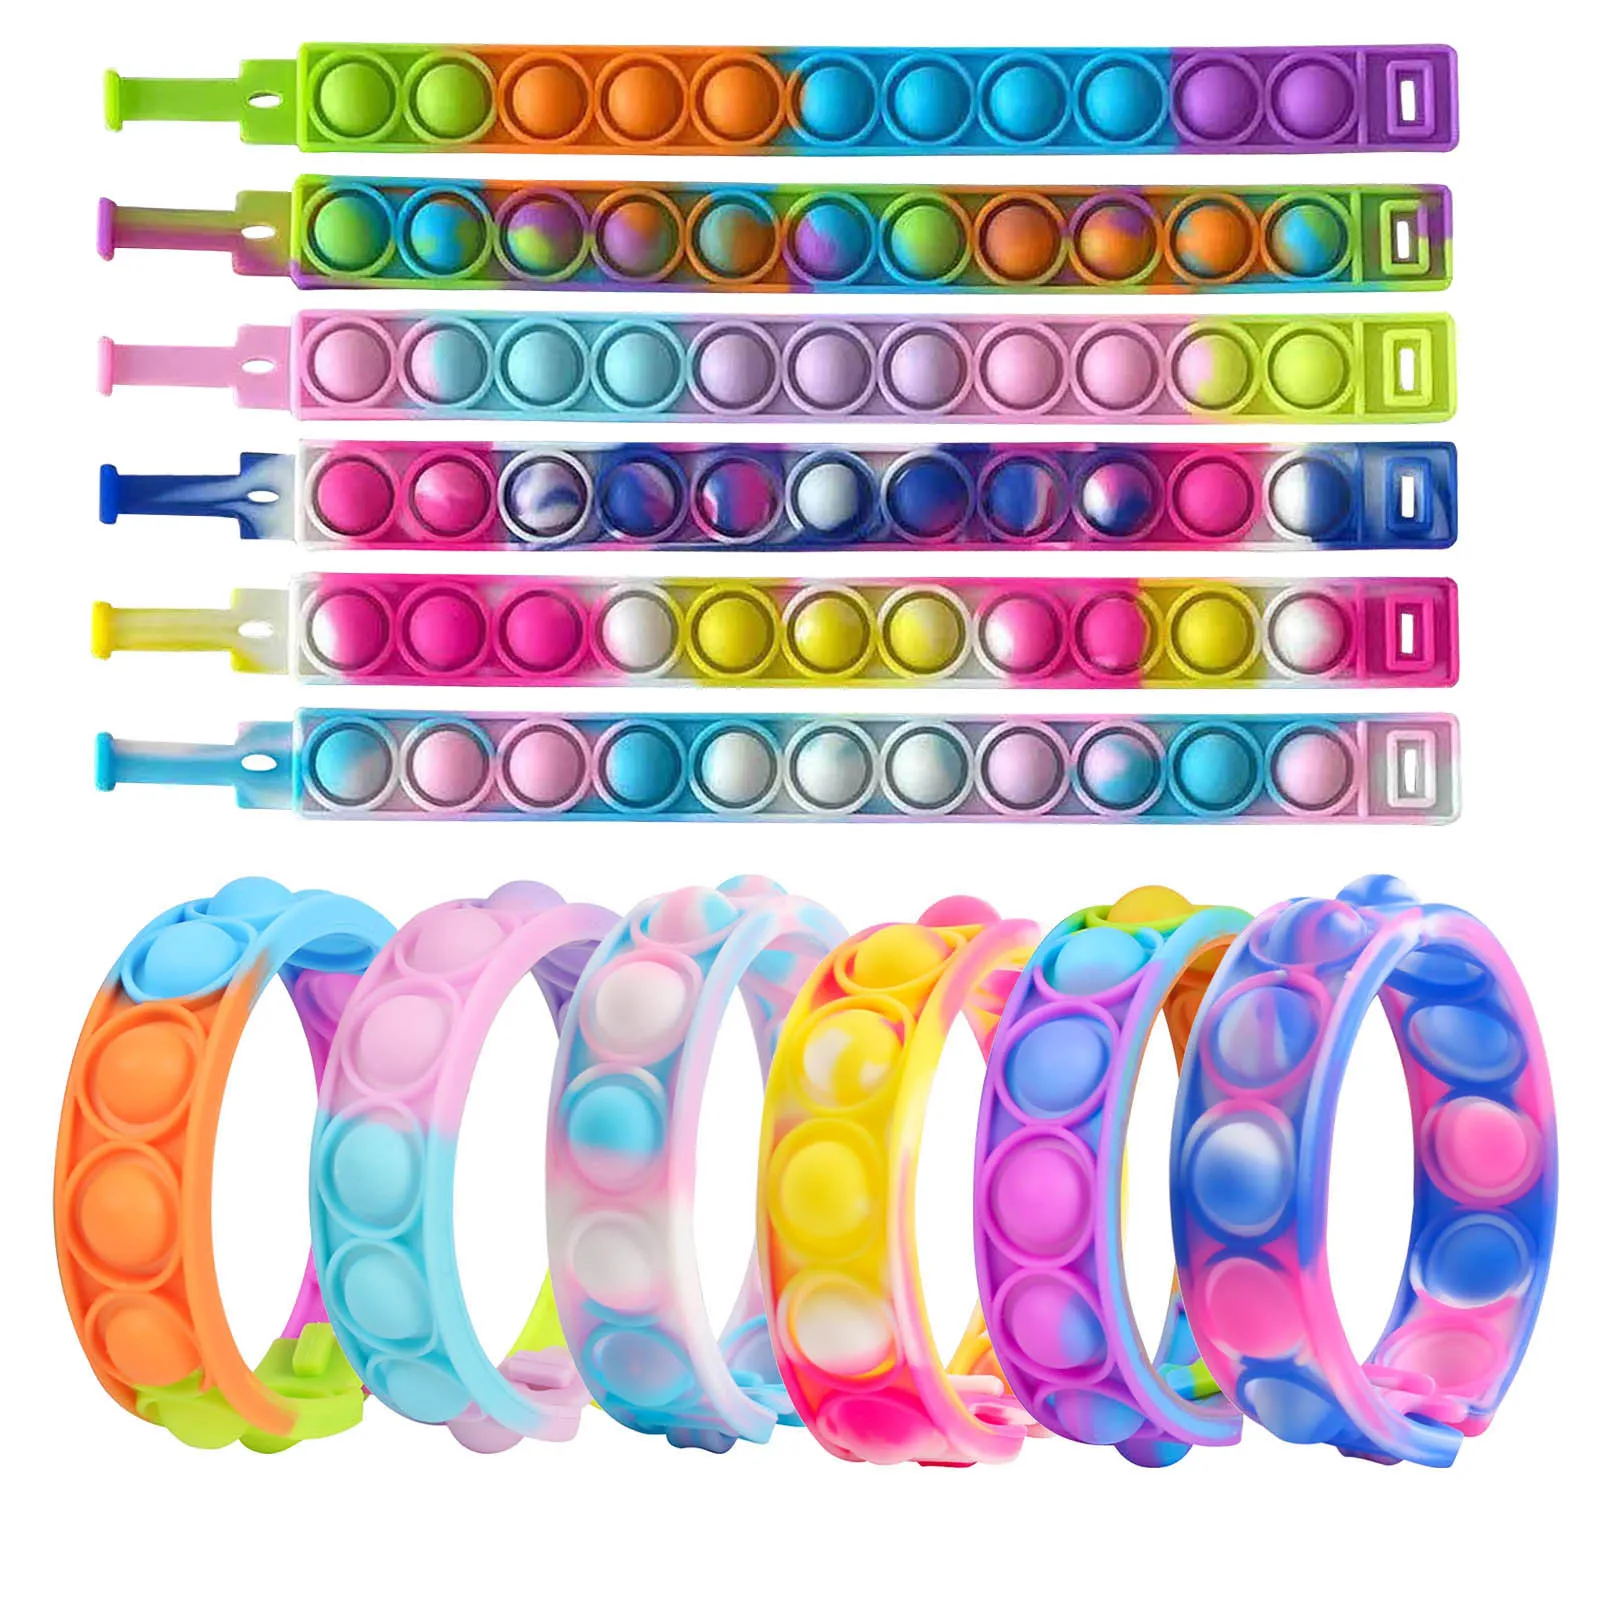 

Светящиеся игрушки-антистресс 6 шт., сенсорный браслет с пузырьками, Простой браслет с регулируемой яркостью, декомпрессионный браслет для ...